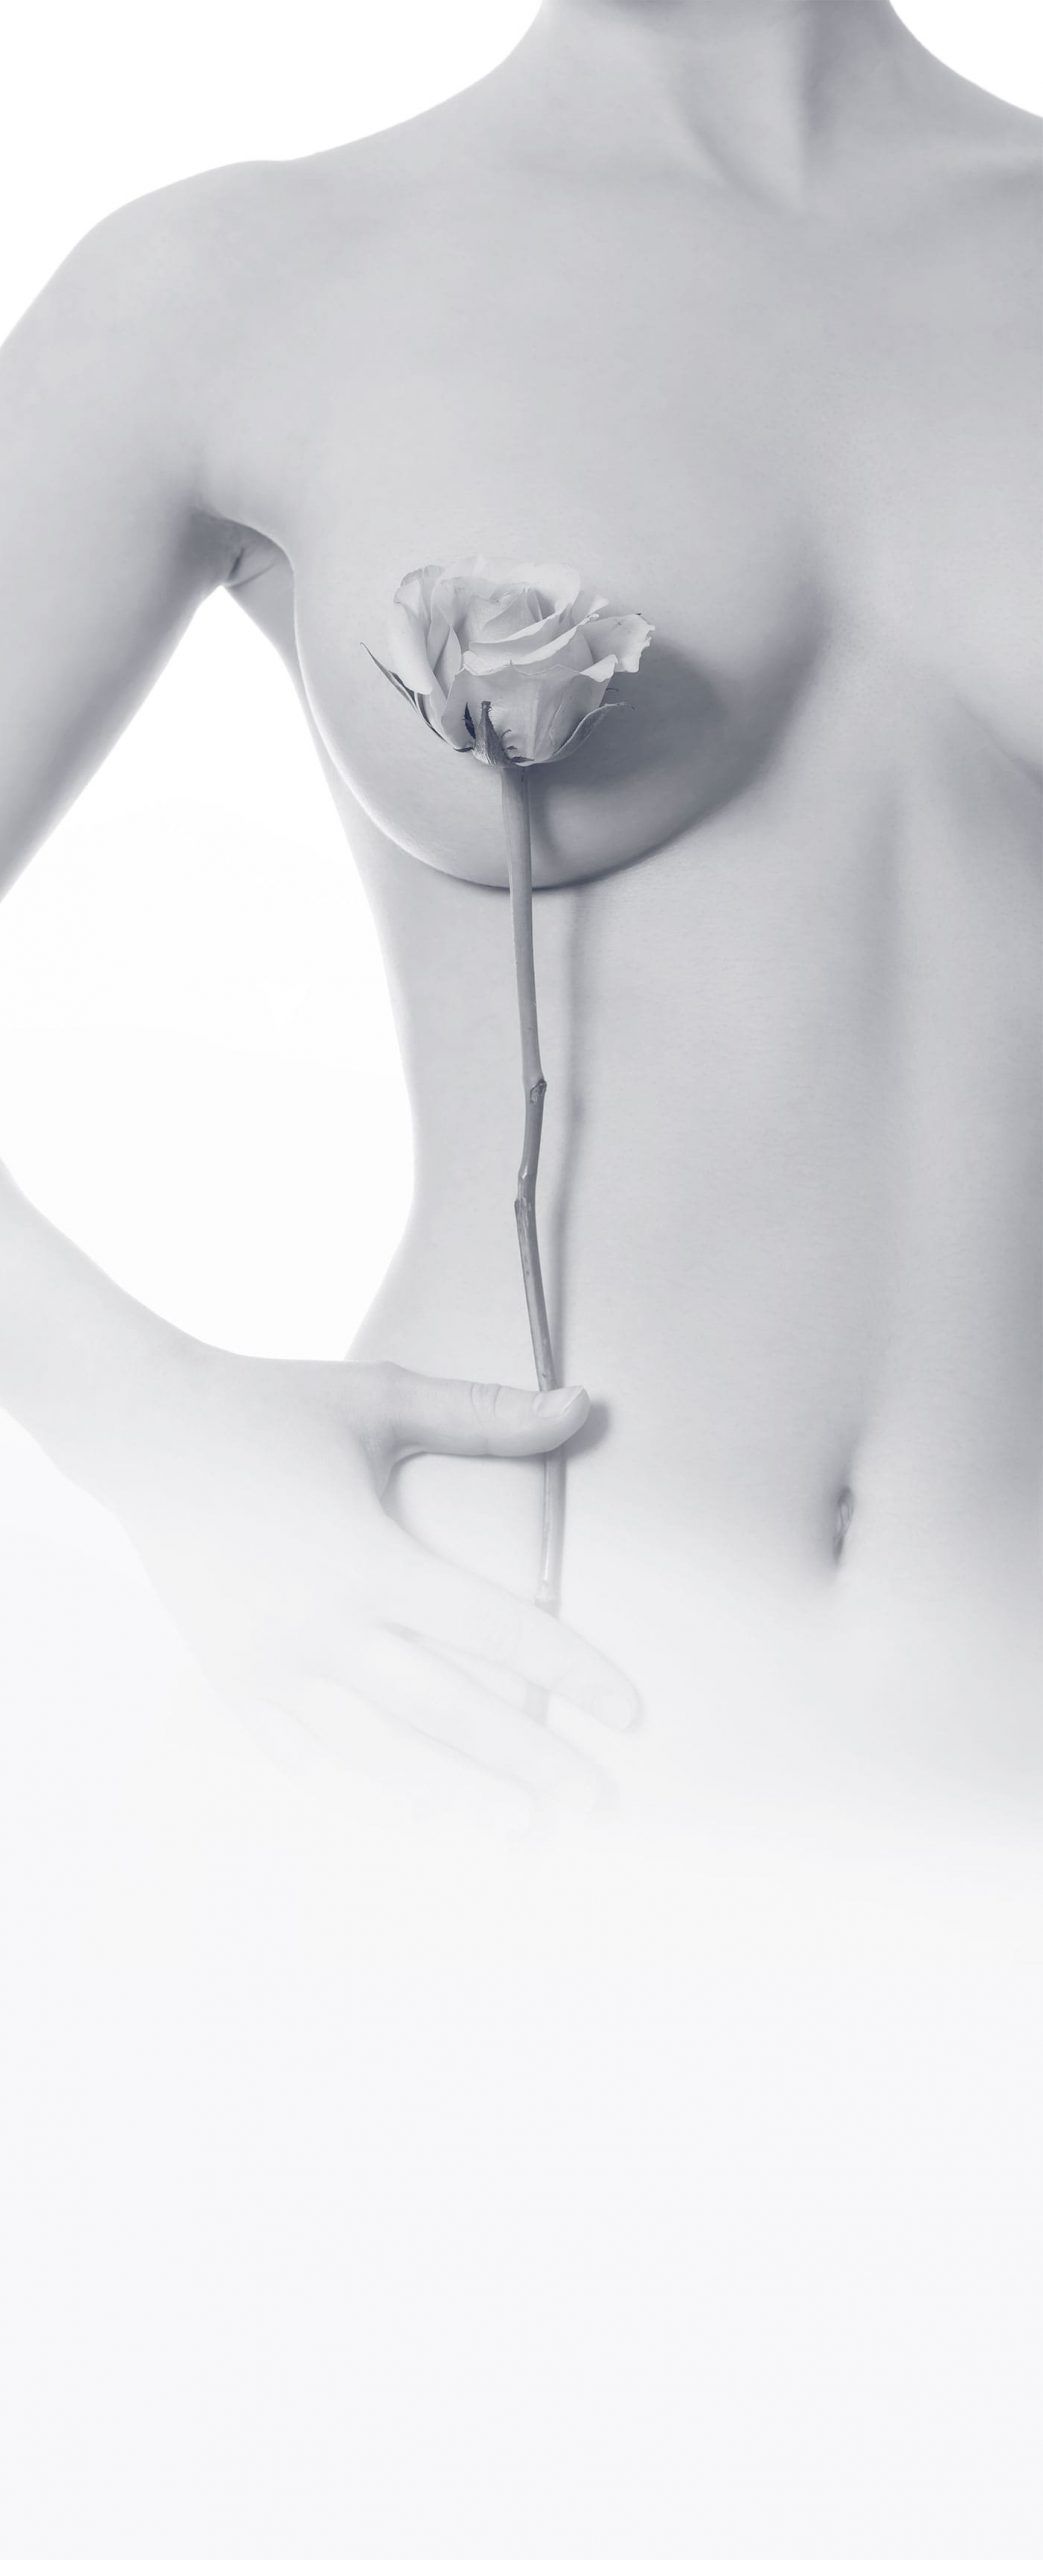 Chirurgie réparatrice des seins, reconstruction mammaire à Cannes - Christophe Laveaux